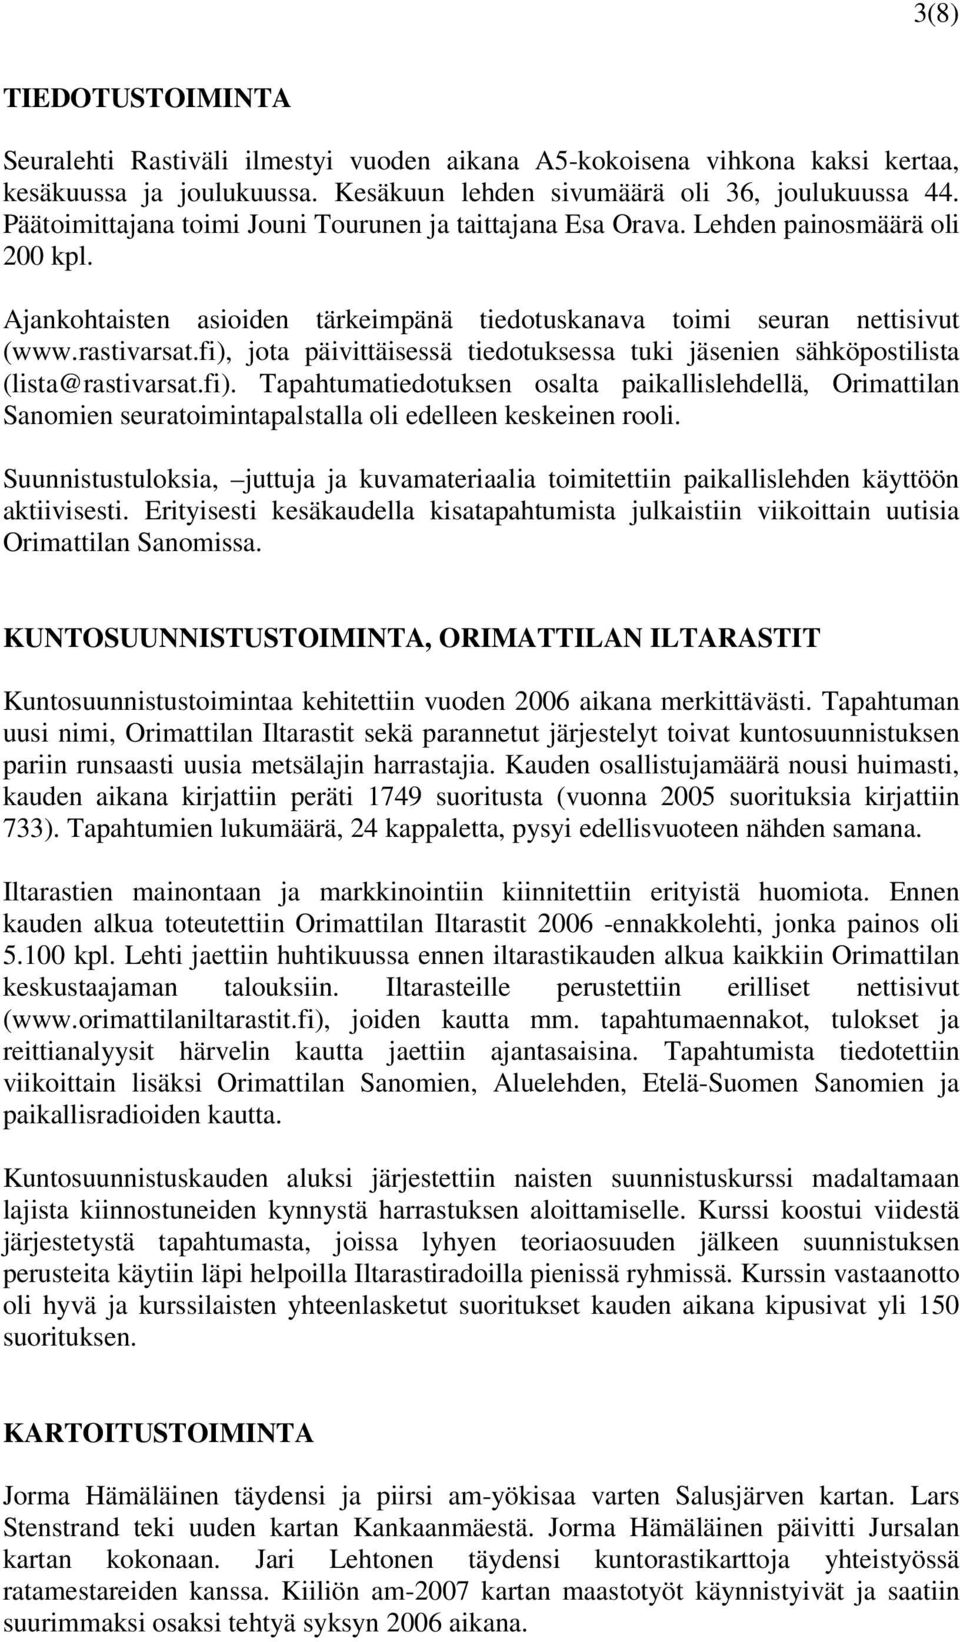 fi), jota päivittäisessä tiedotuksessa tuki jäsenien sähköpostilista (lista@rastivarsat.fi). Tapahtumatiedotuksen osalta paikallislehdellä, Orimattilan Sanomien seuratoimintapalstalla oli edelleen keskeinen rooli.